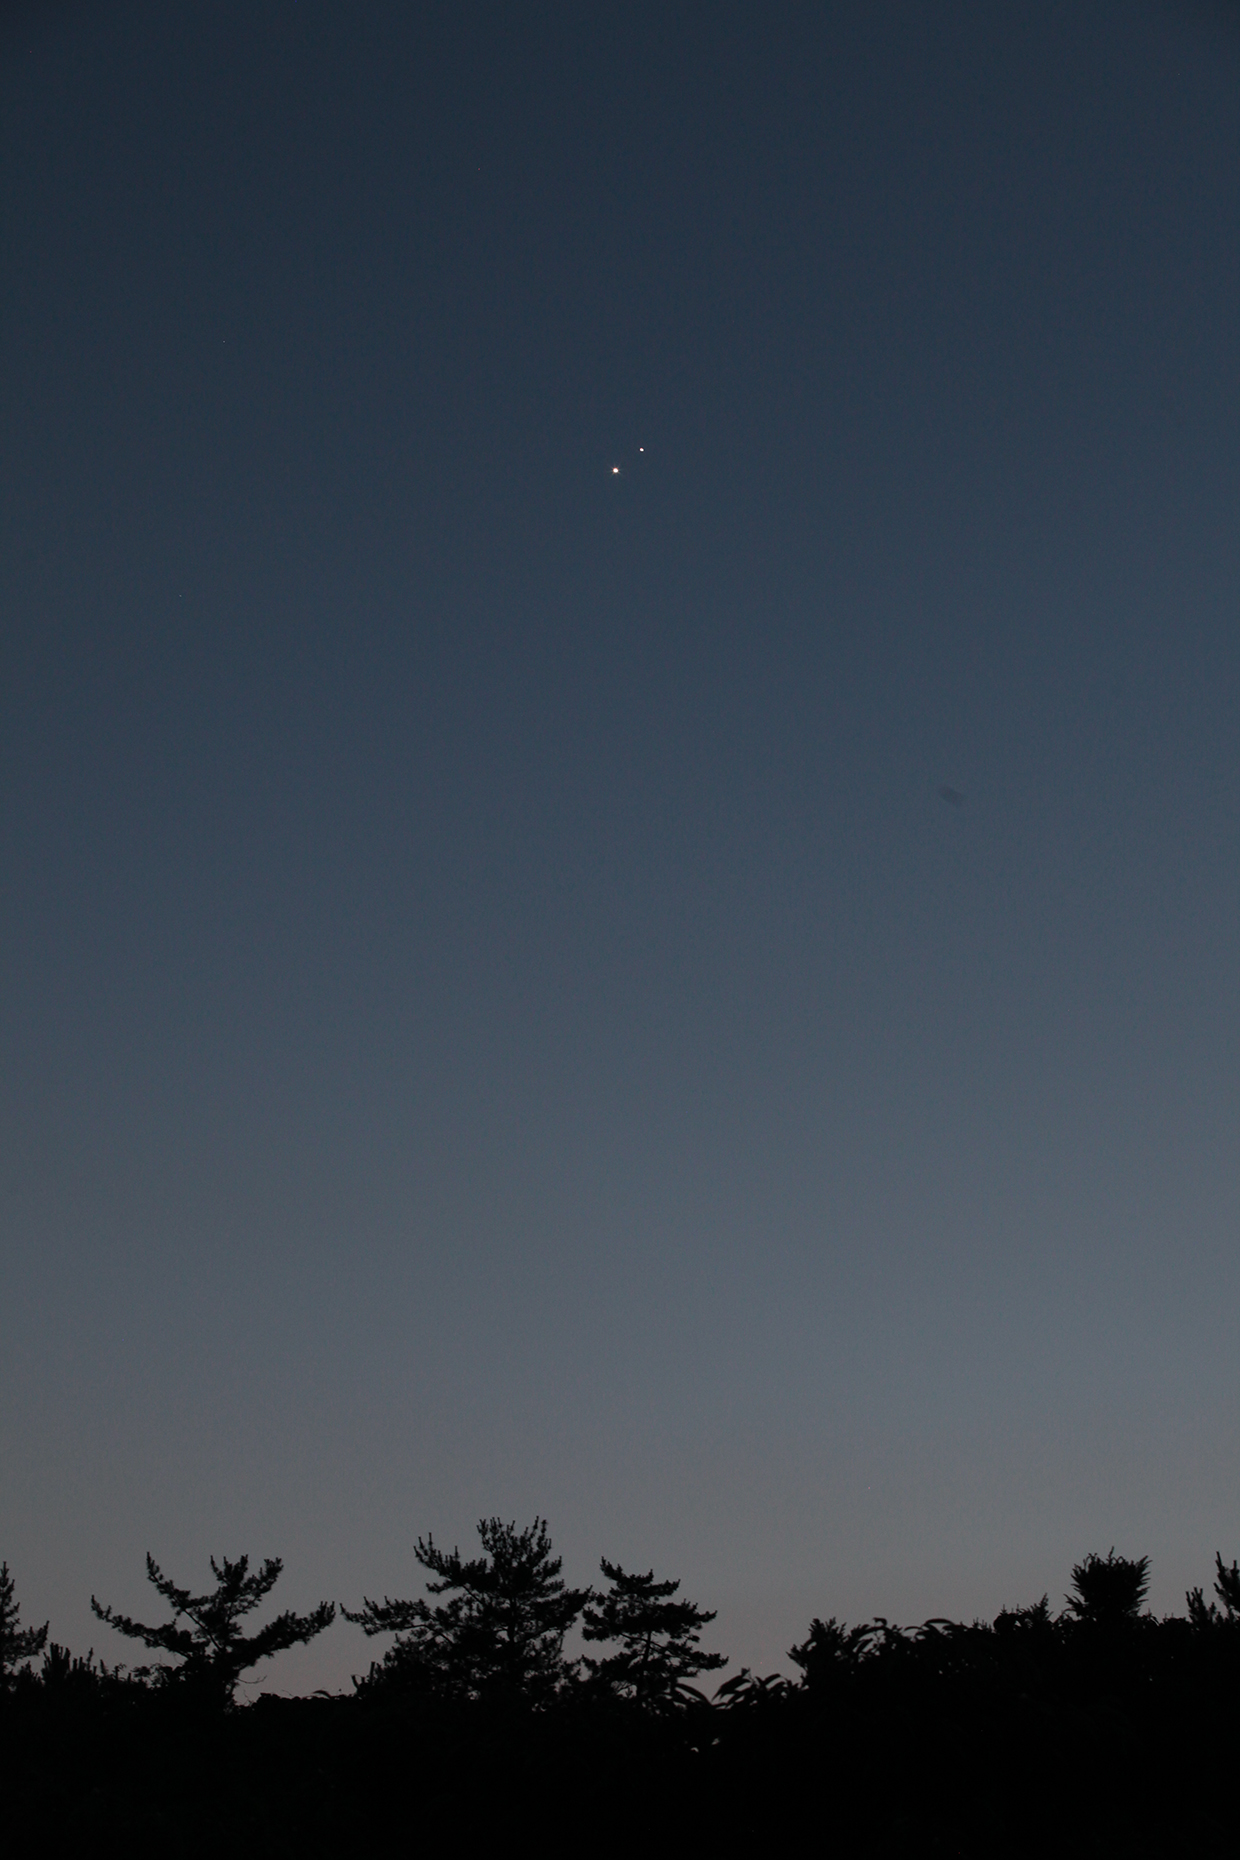 저녁 8시 27분, 국립고흥청소년우주체험센터에서 바라 본 서쪽하늘 모습. 금성과 목성이 사이좋게 마주하고 있다.